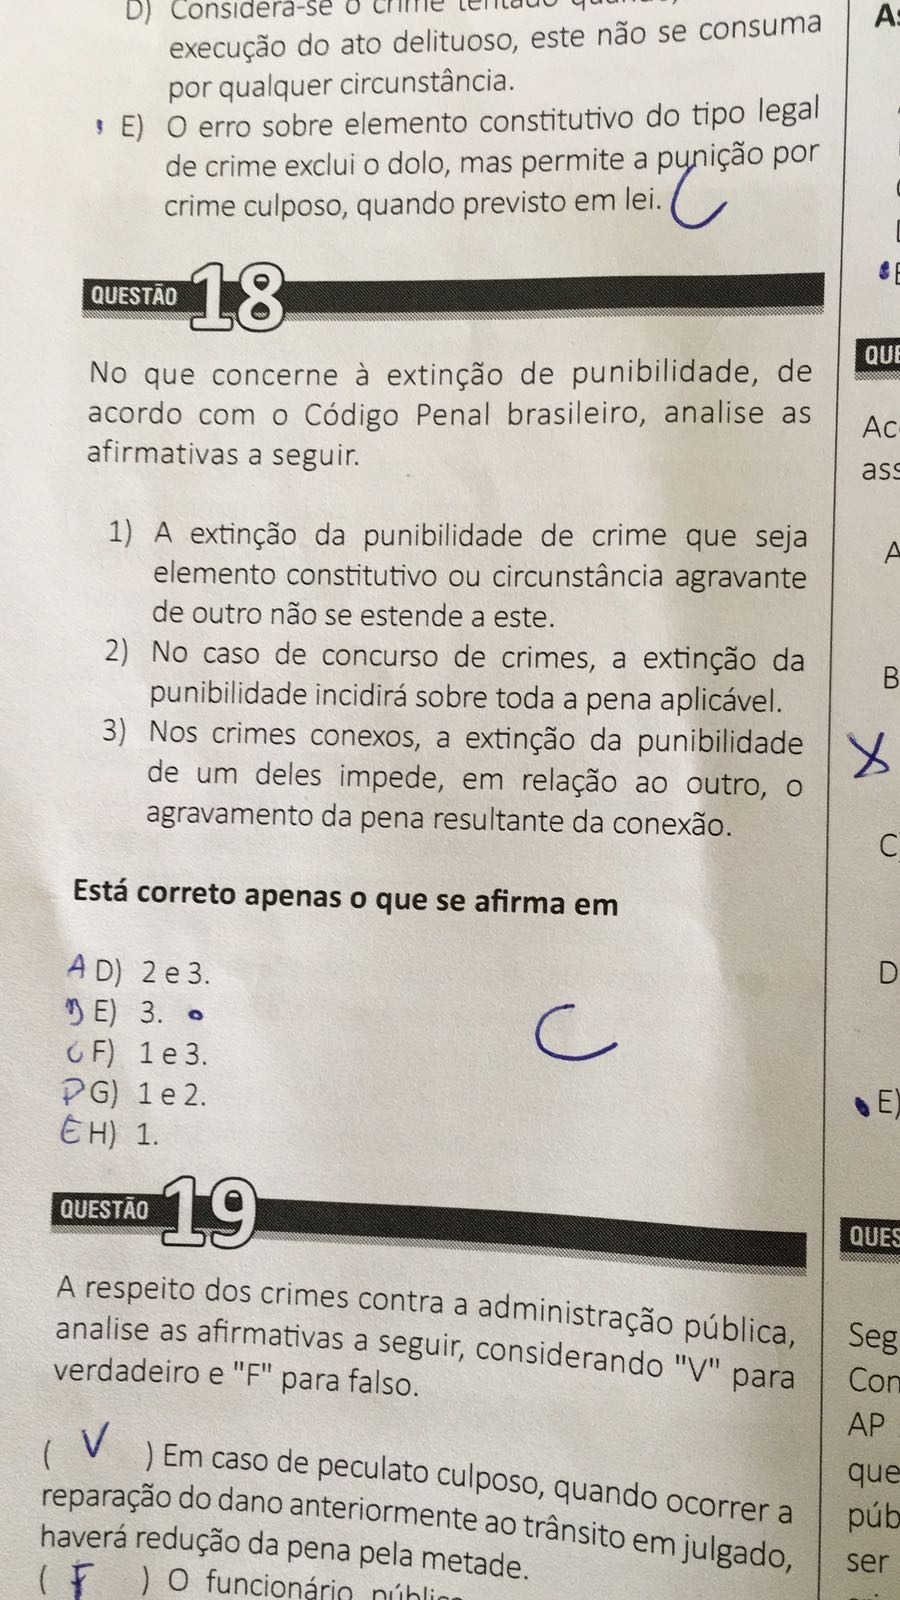 Questão de número 18, da prova de oficiais, foi anulada - Foto: Divulgação